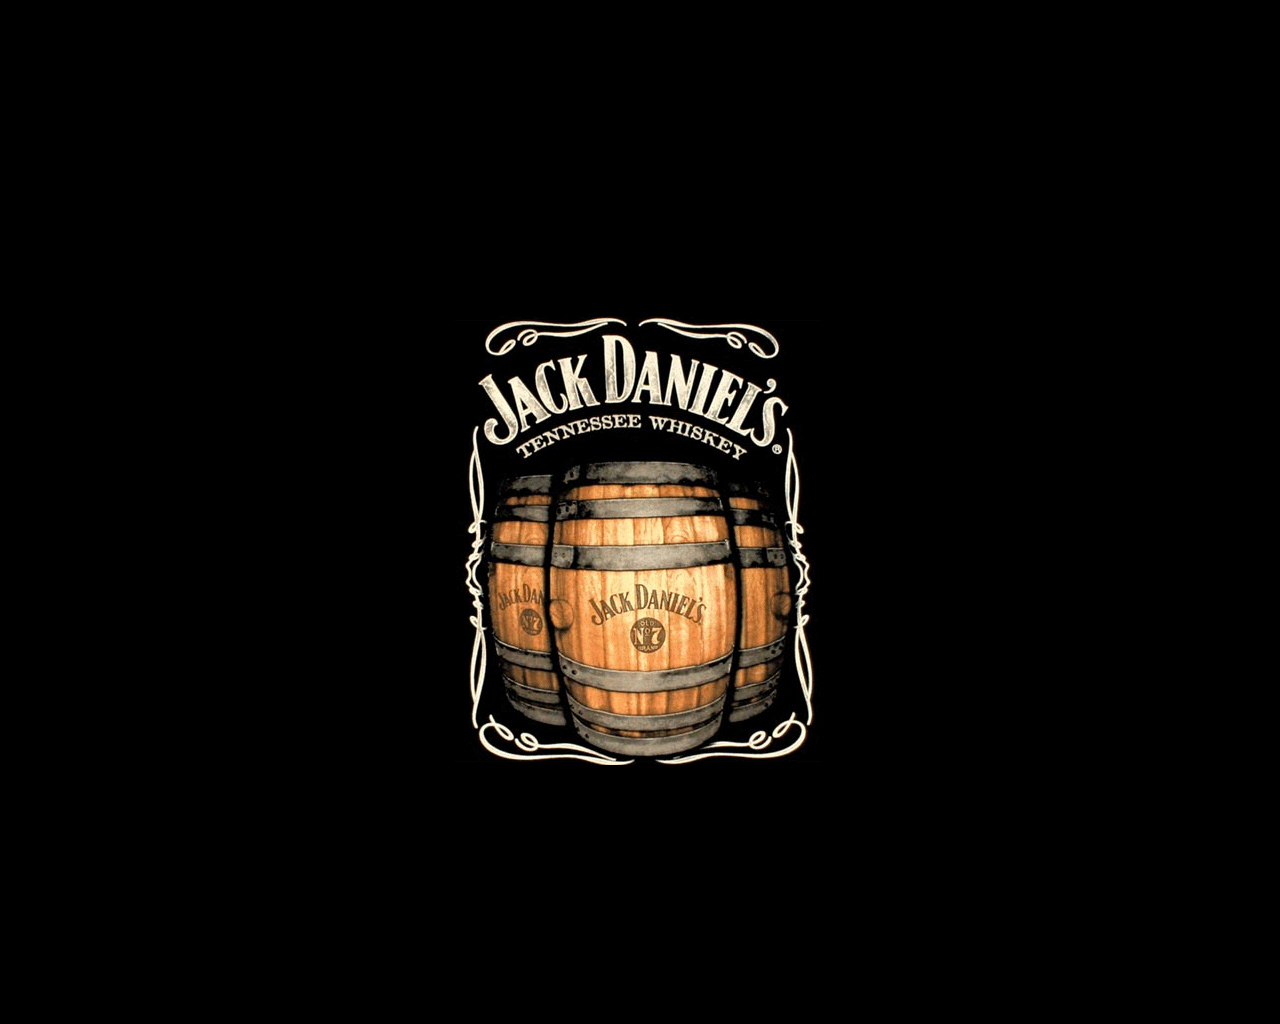 jack_daniels_whiskey_whisky_desktop_1280x1024_wallpaper-7252.jpg